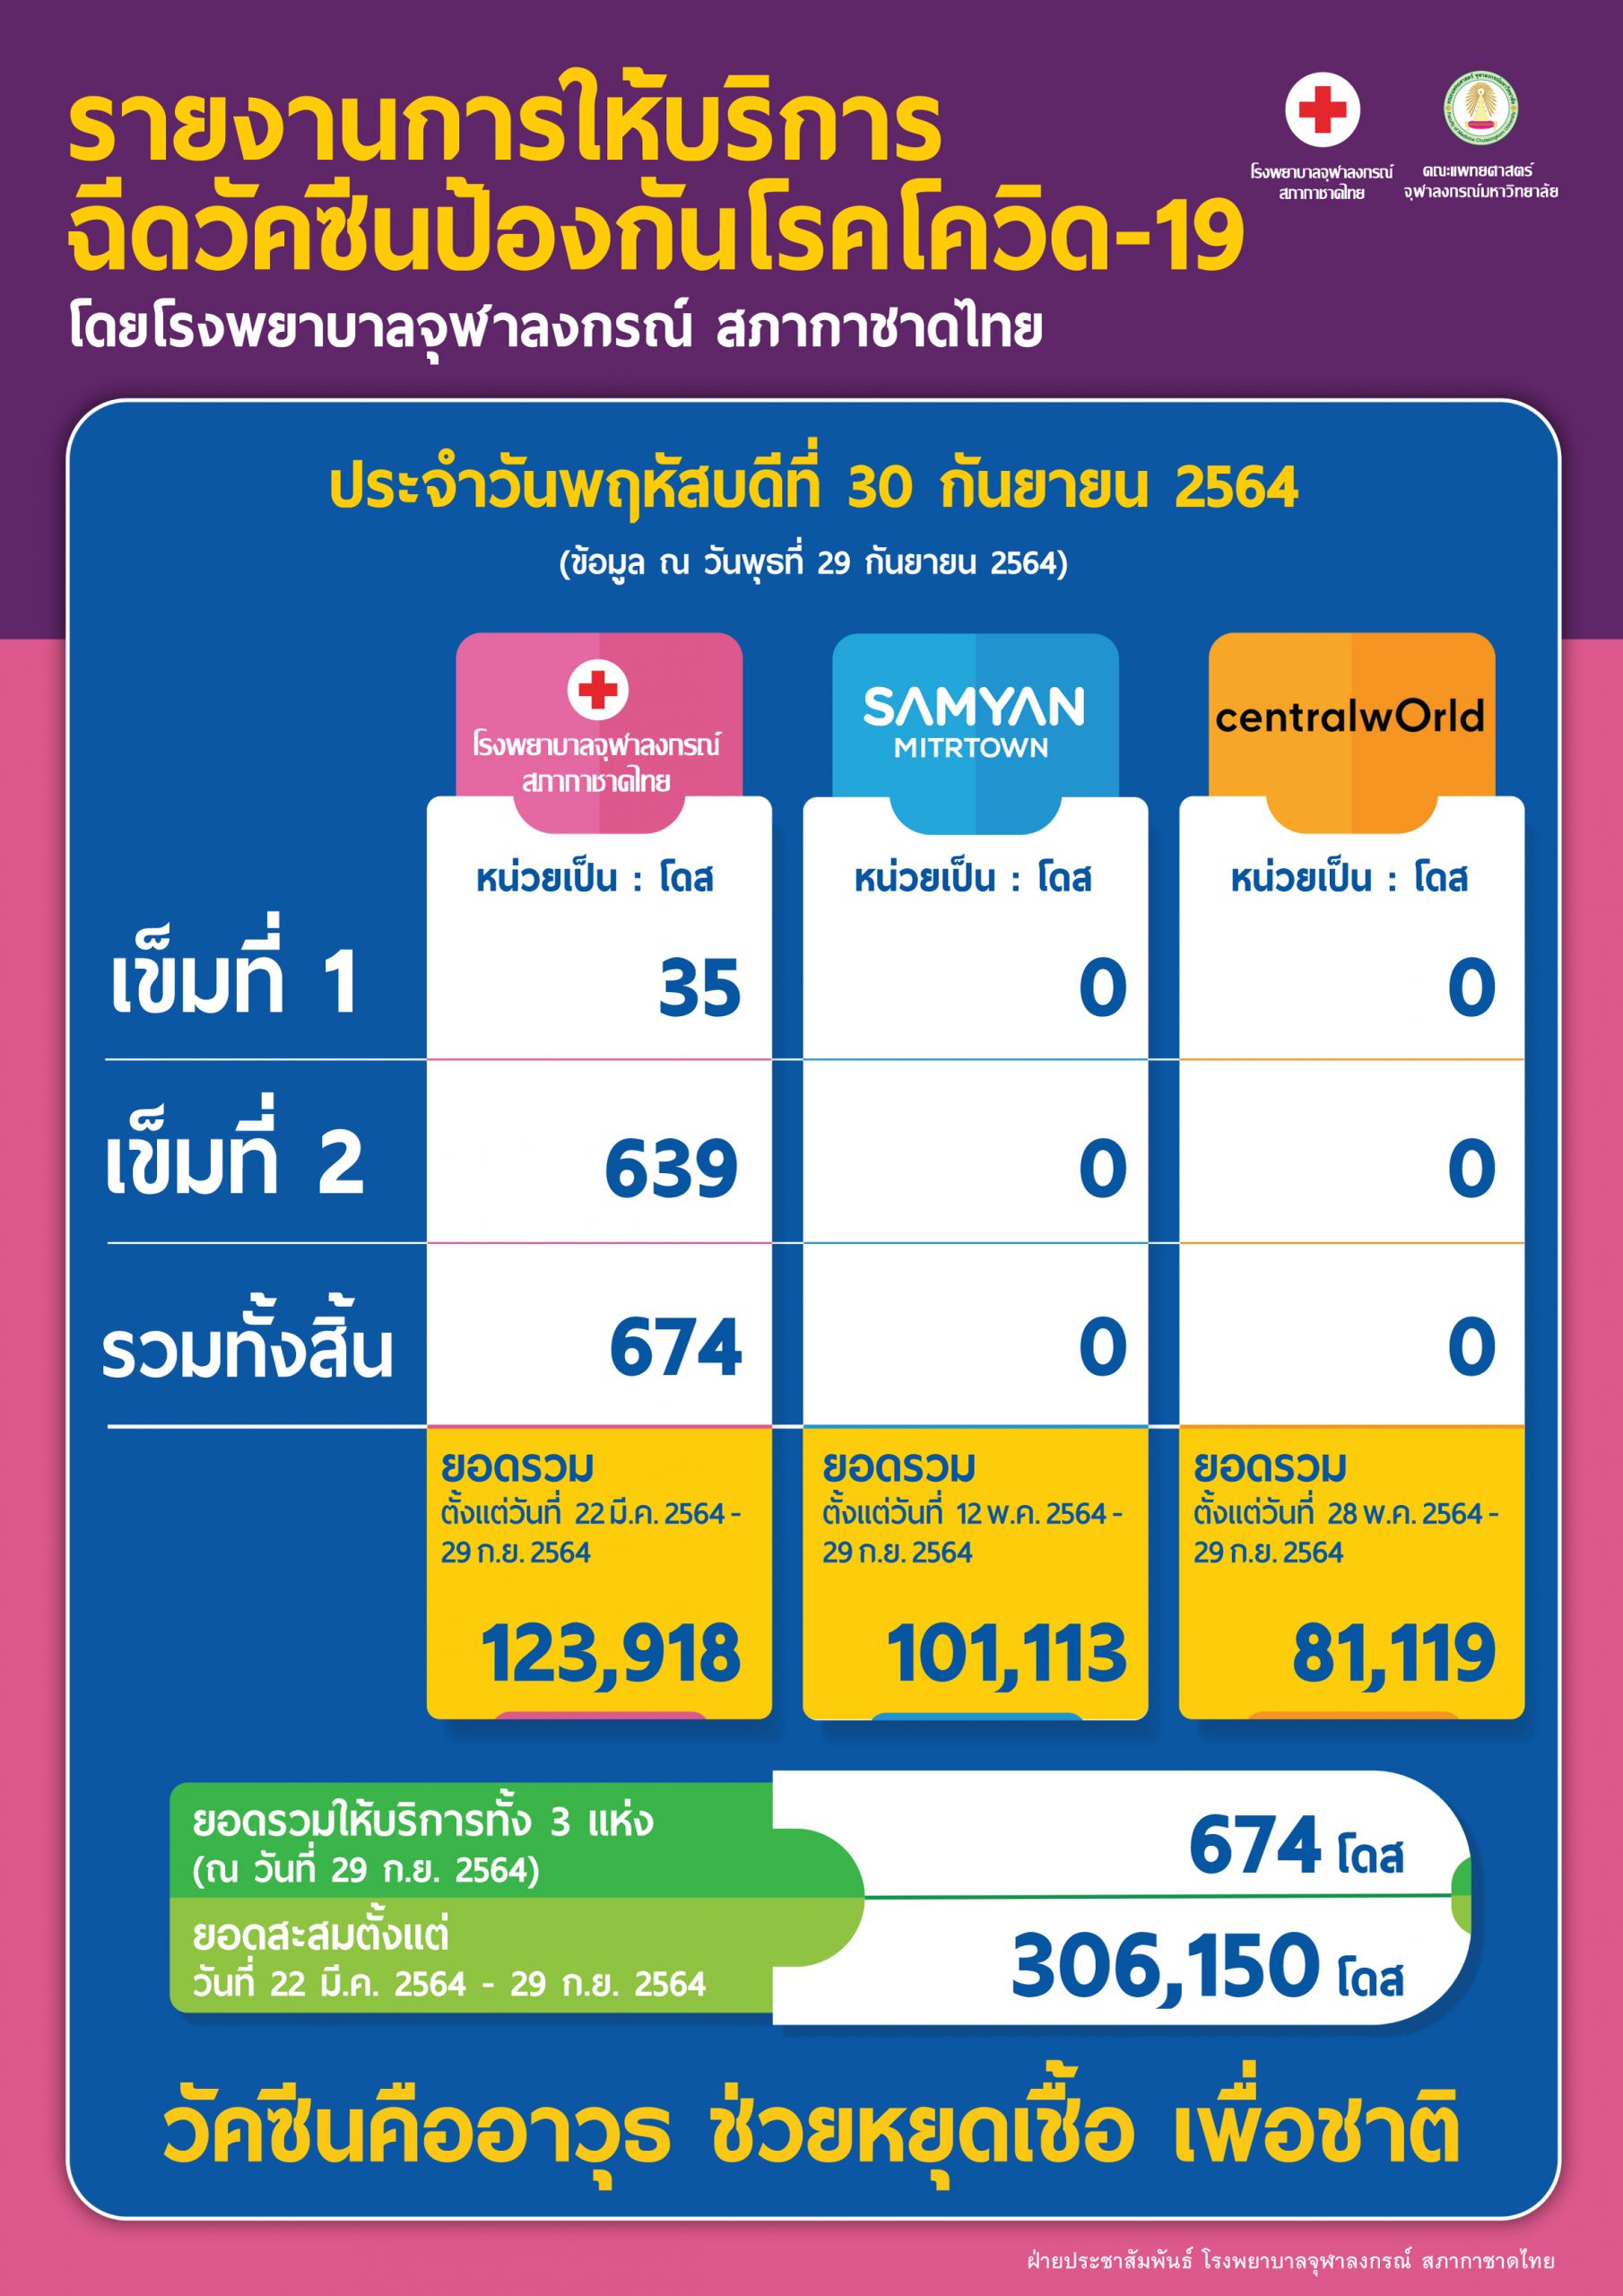 รายงานการให้บริการฉีดวัคซีนป้องกันโรคโควิด-19 โดยโรงพยาบาลจุฬาลงกรณ์ สภากาชาดไทย ประจำวันพฤหัสบดีที่ 30 กันยายน 2564